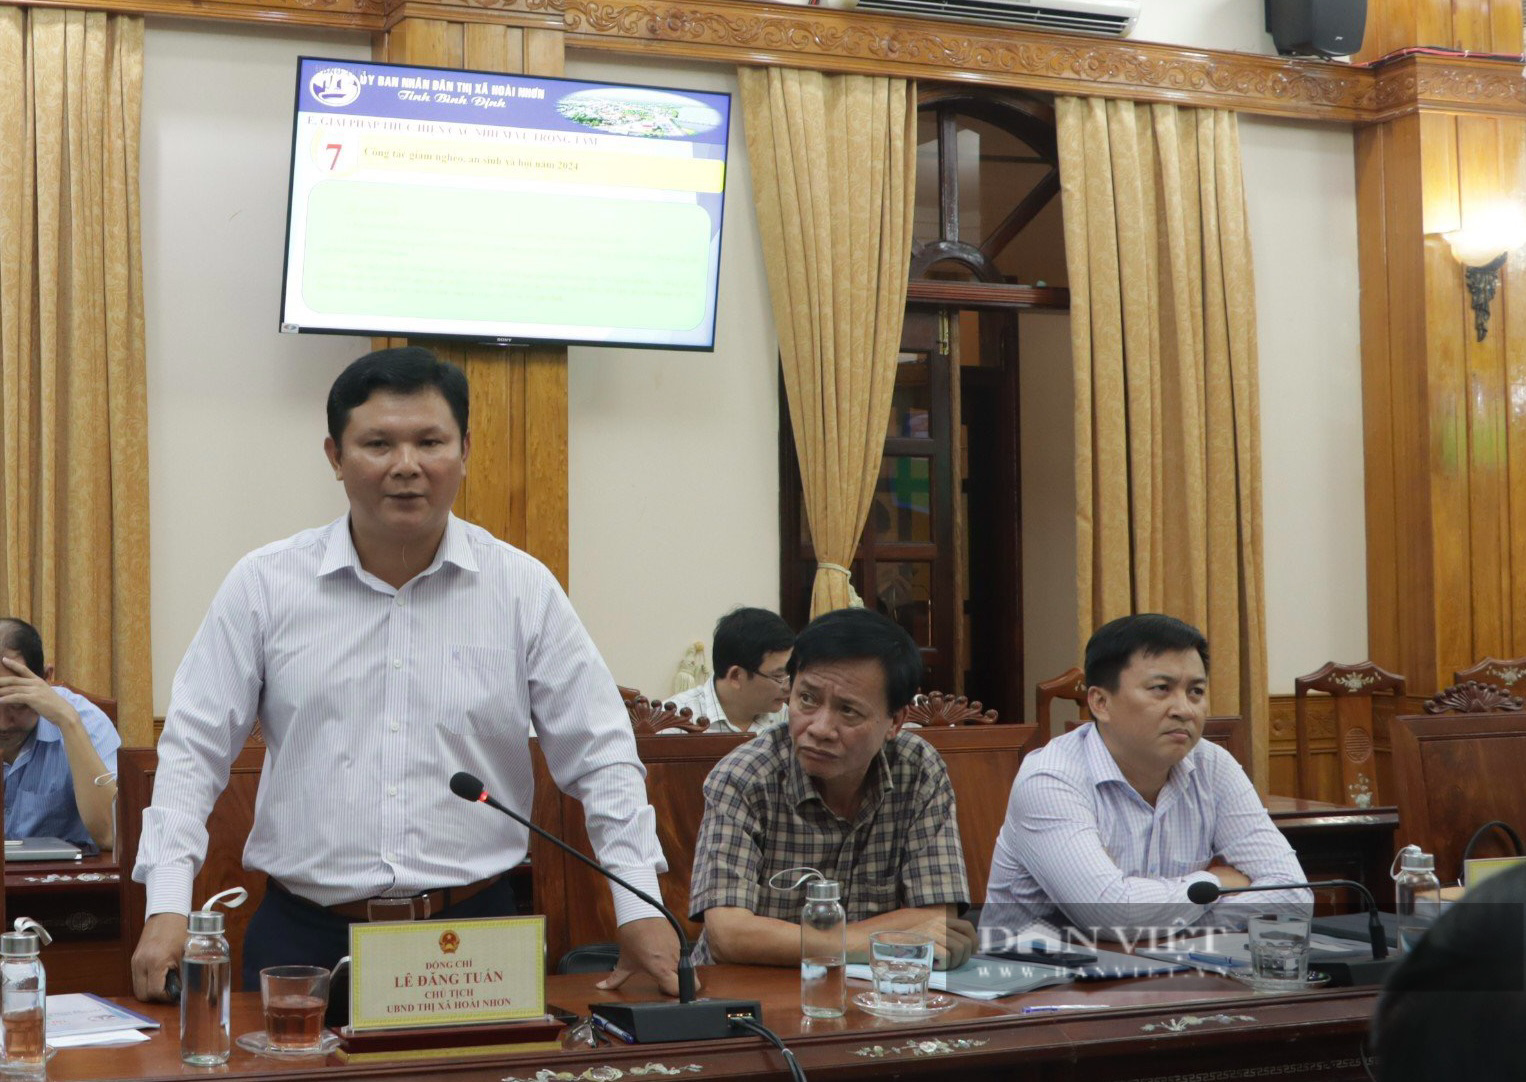 Thanh tra tỉnh Bình Định "điểm mặt" sai phạm đất đai, Chủ tịch UBND thị xã Hoài Nhơn chỉ đạo "nóng"- Ảnh 3.